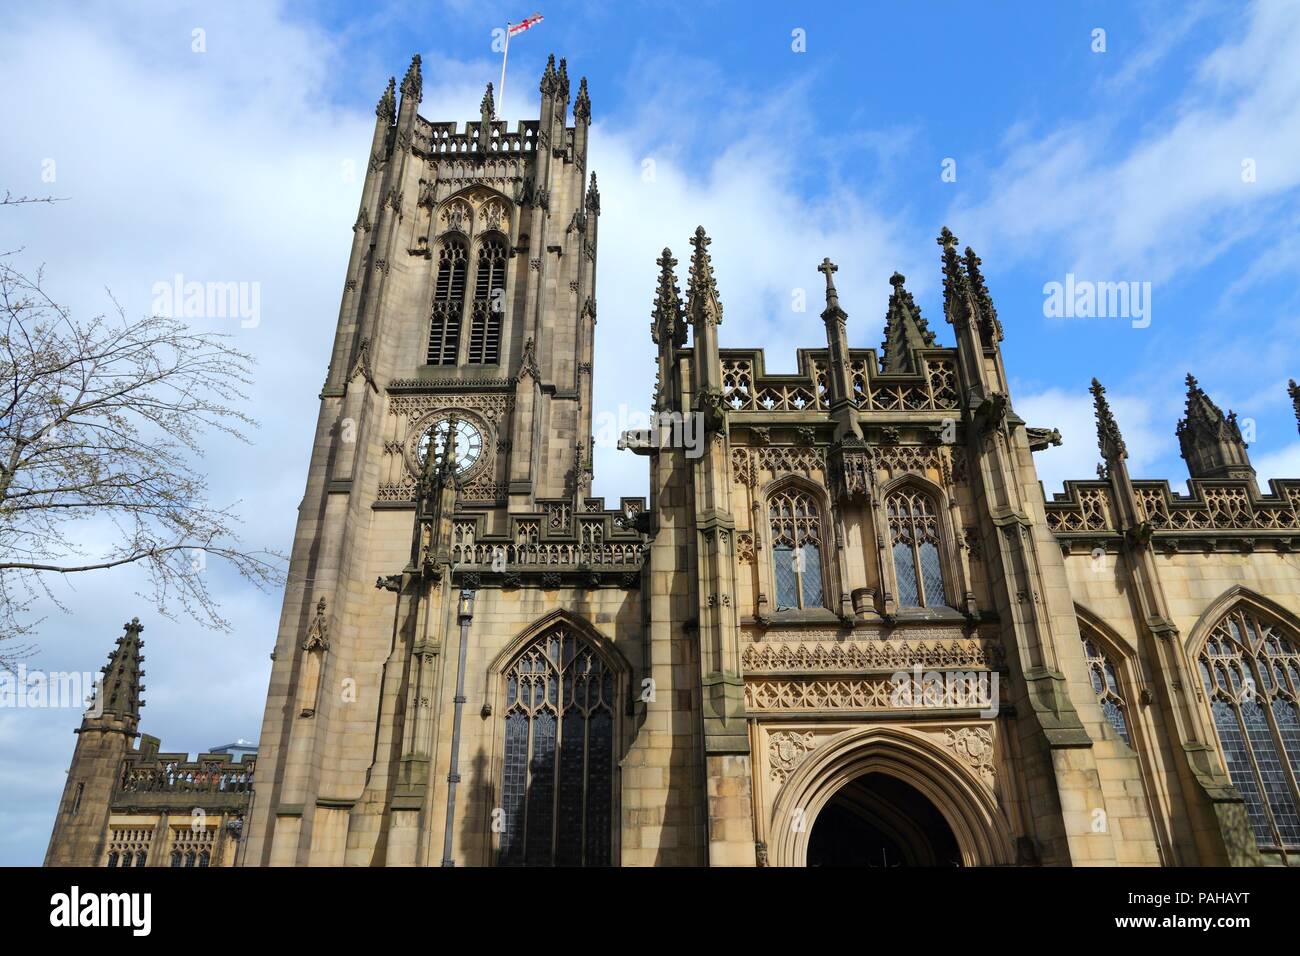 - La ciudad de Manchester, en el Noroeste de Inglaterra (Reino Unido). Catedral anglicana. Foto de stock